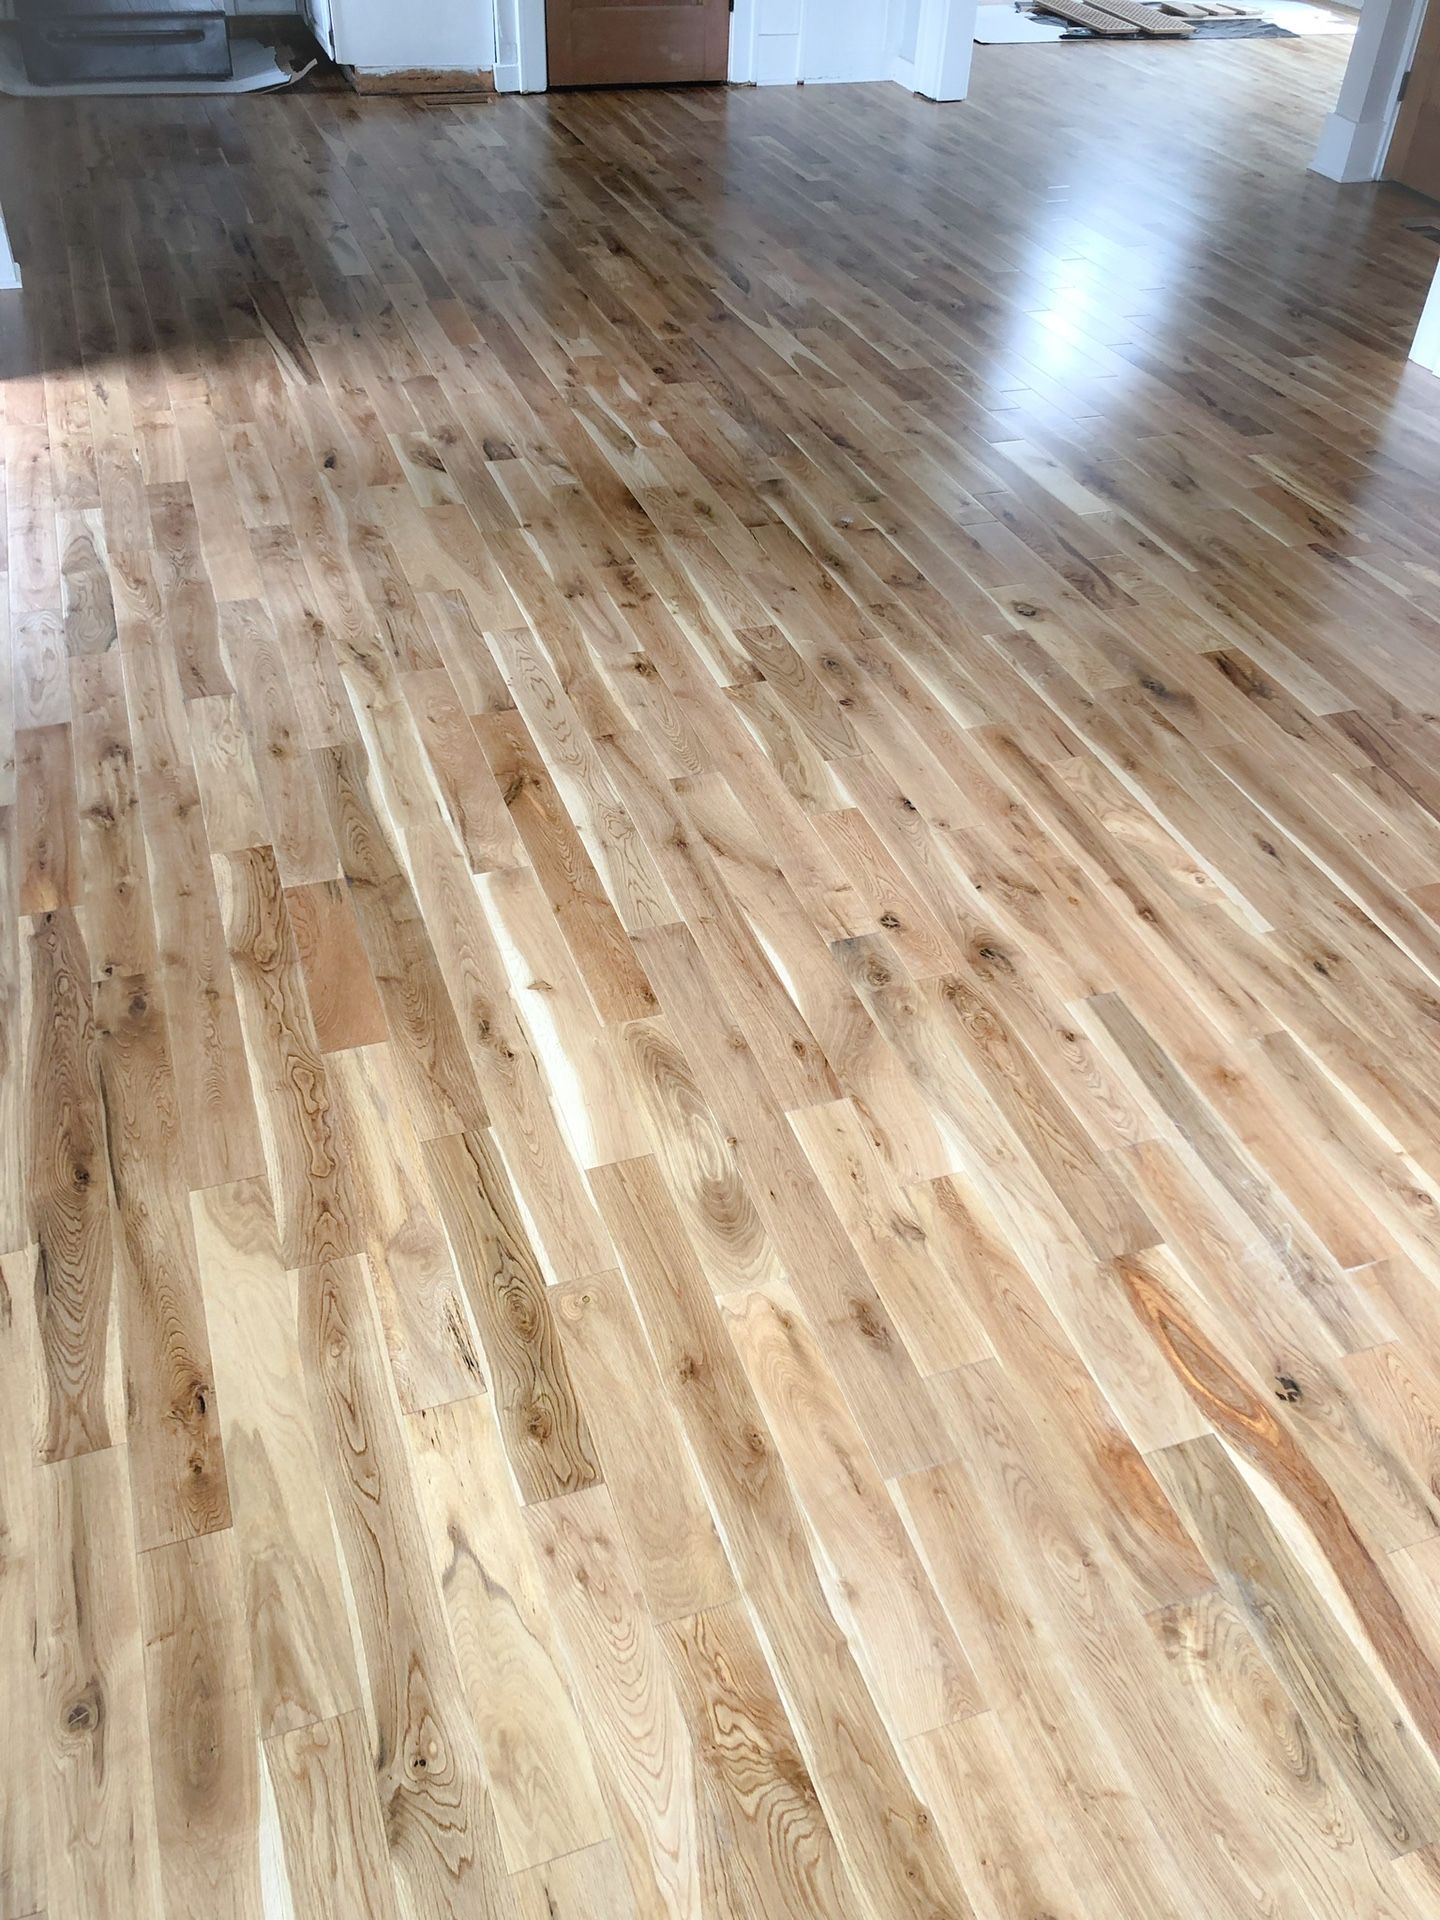 Sale!!! Solid white oak hardwood floor Prefinished